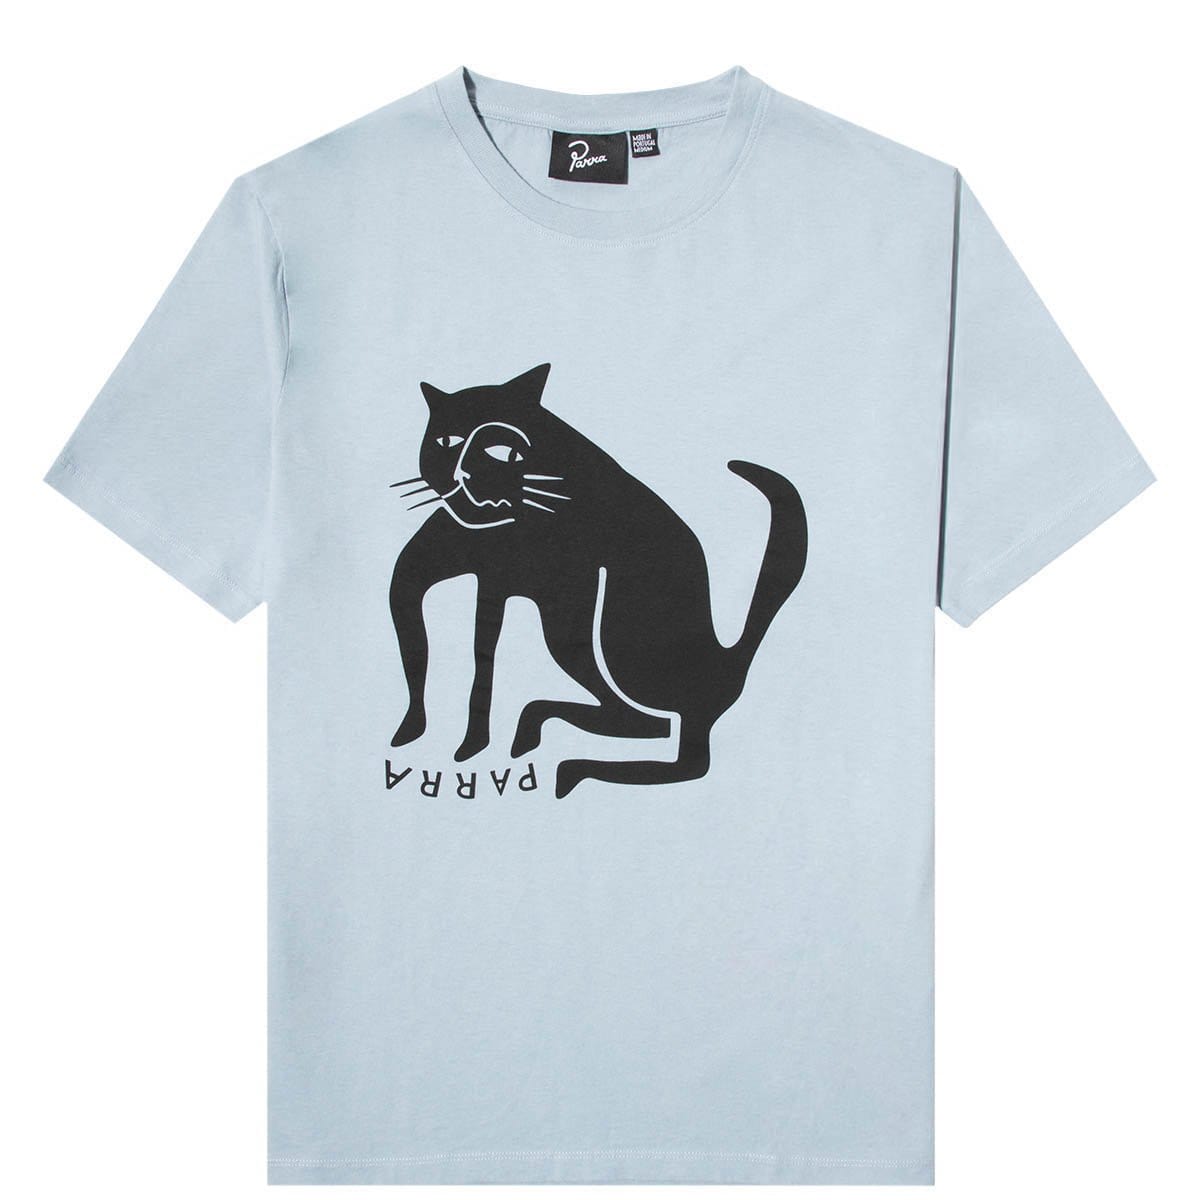 By Parra T-Shirts CAT T-SHIRT